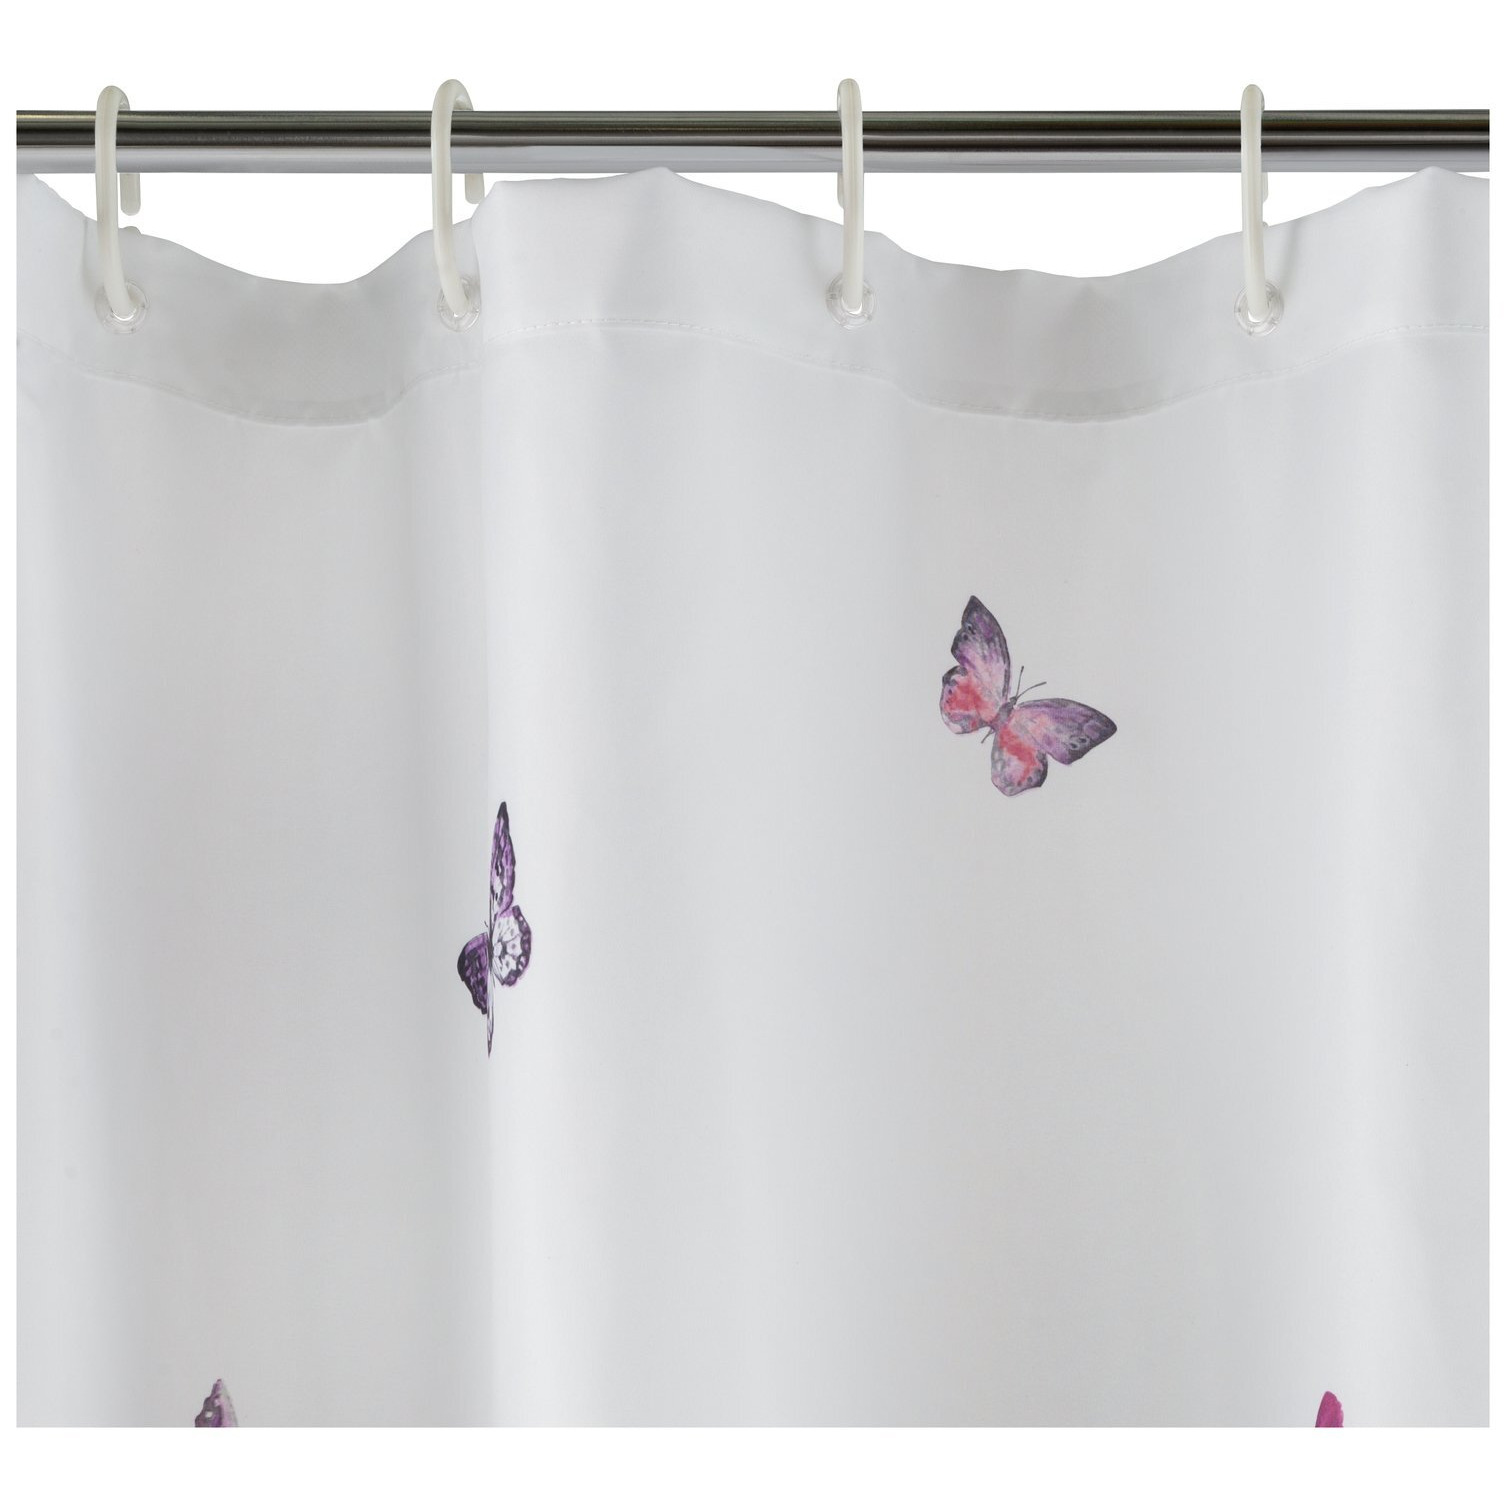 Argos Home Butterflies Shower Curtain - Pink - image 1